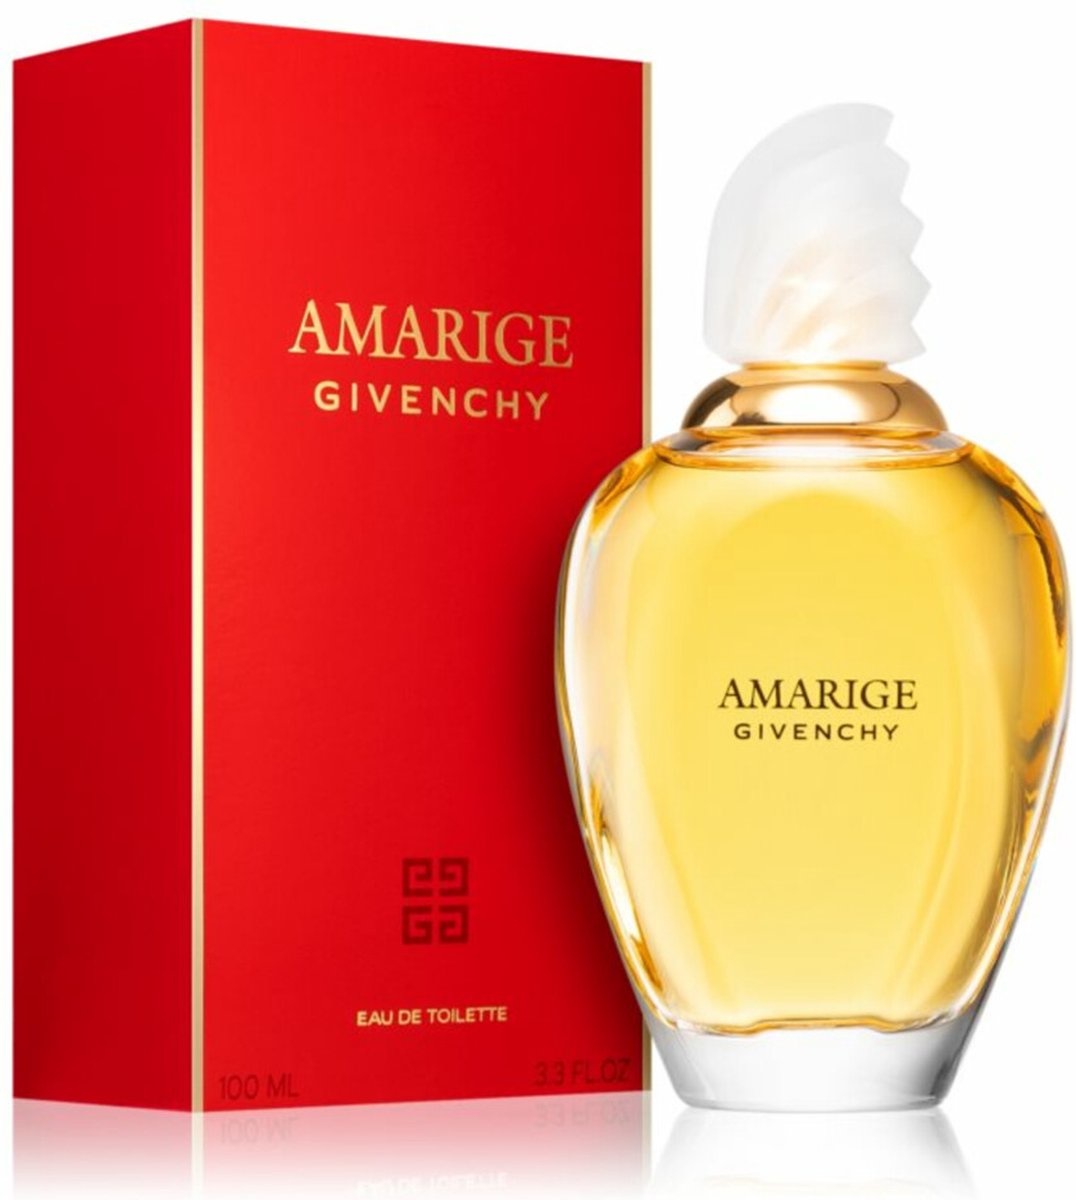 Givenchy Amarige 100 ml - Eau de Toilette - Women's Perfume